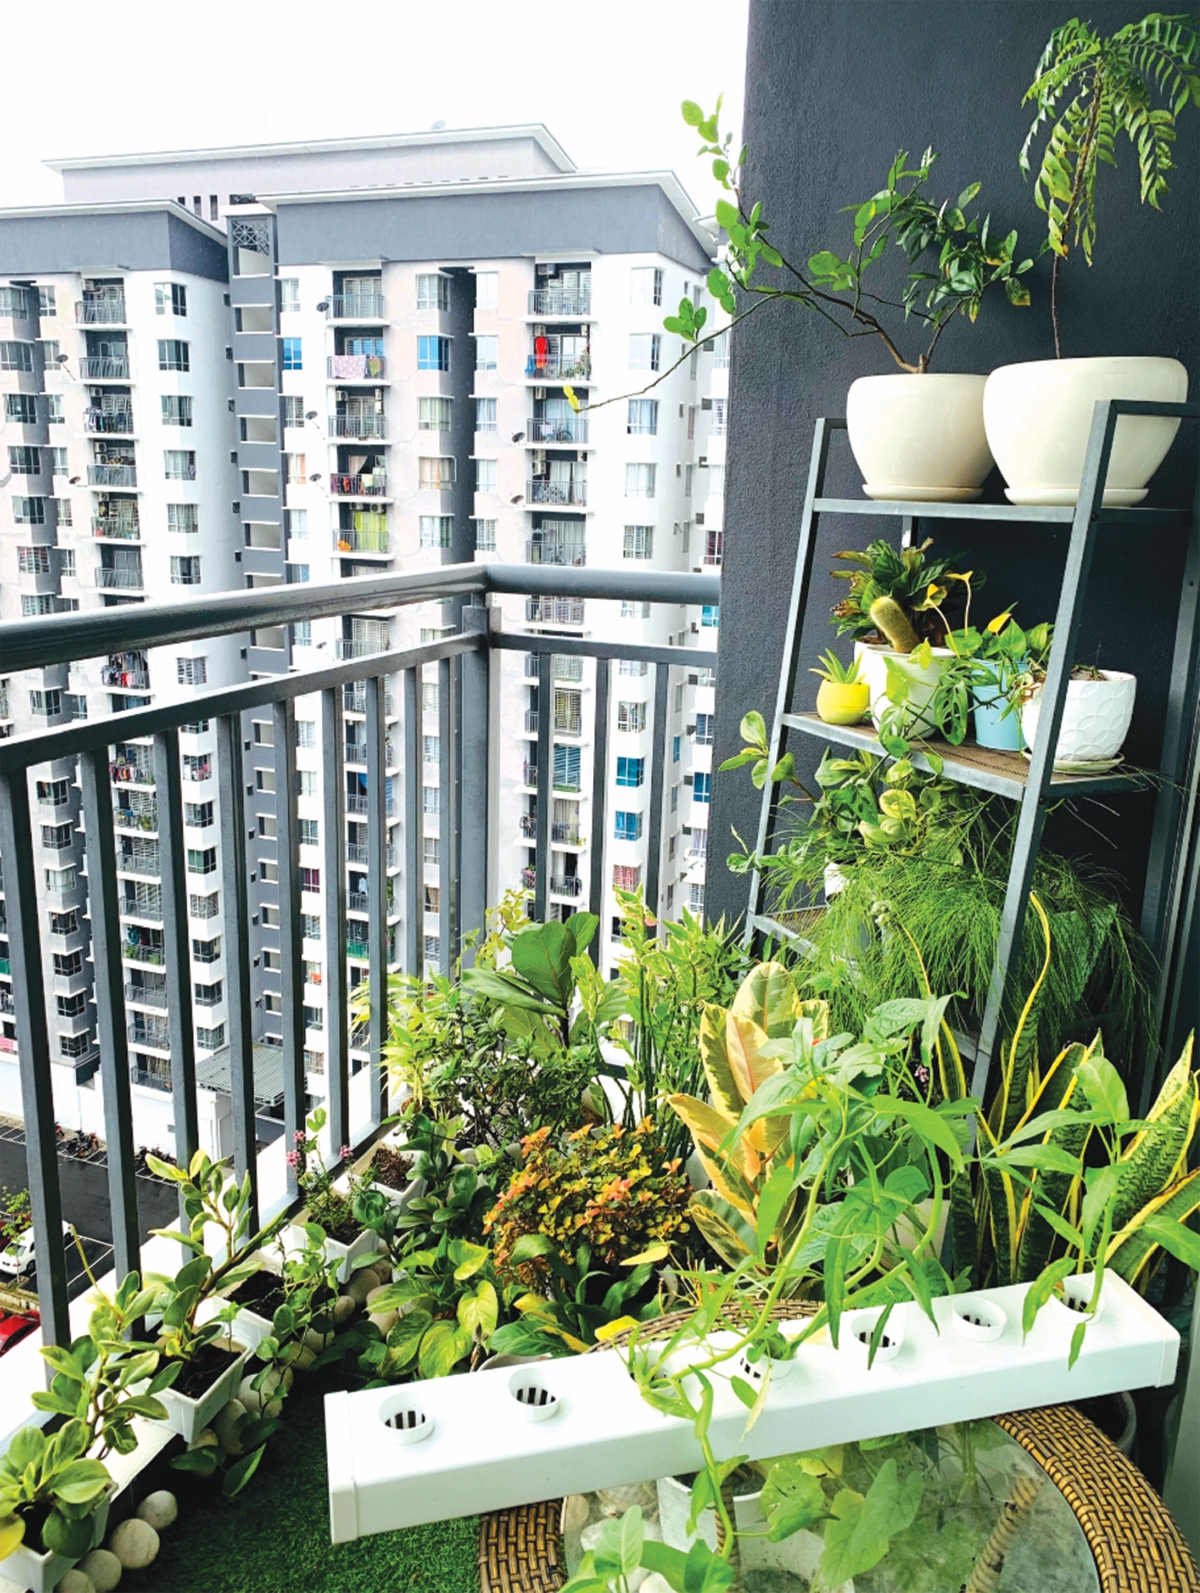 RUANG balkoni yang mempunyai tanaman hijau.